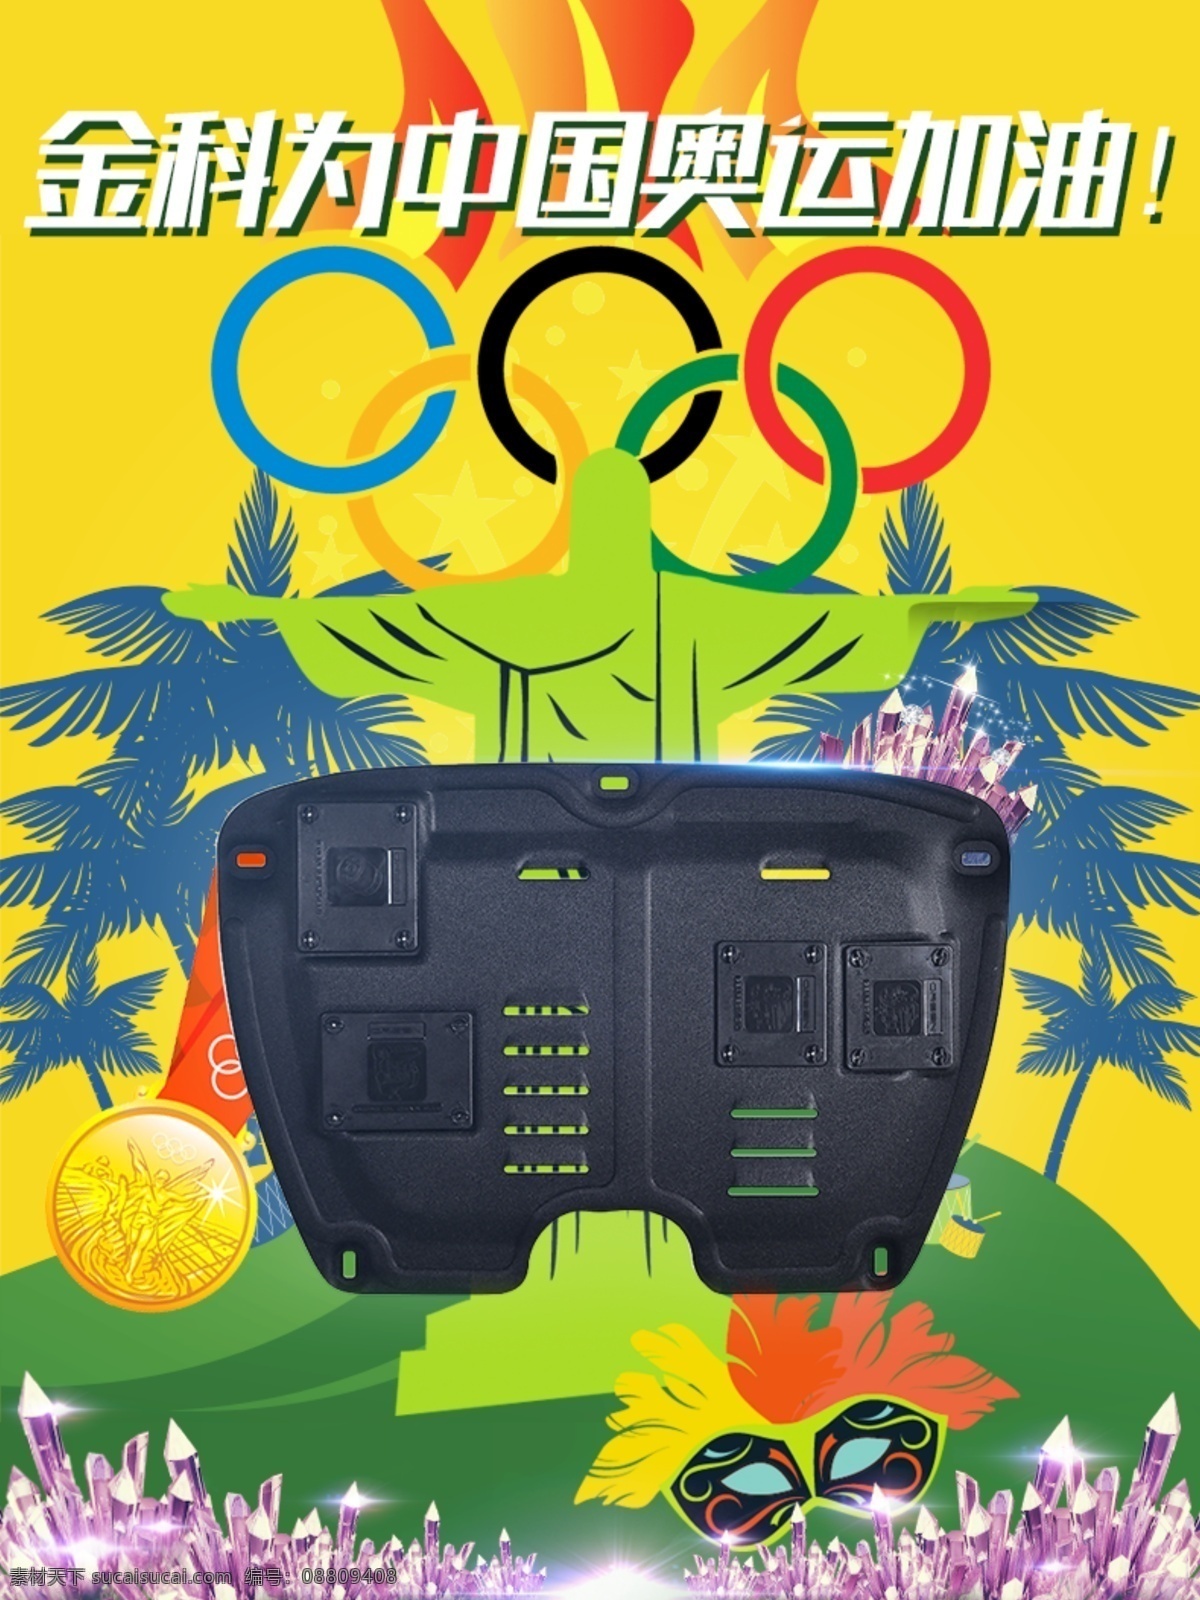 奥运 主题 详情 欢迎 页 欢迎页 金牌 巴西 紫水晶